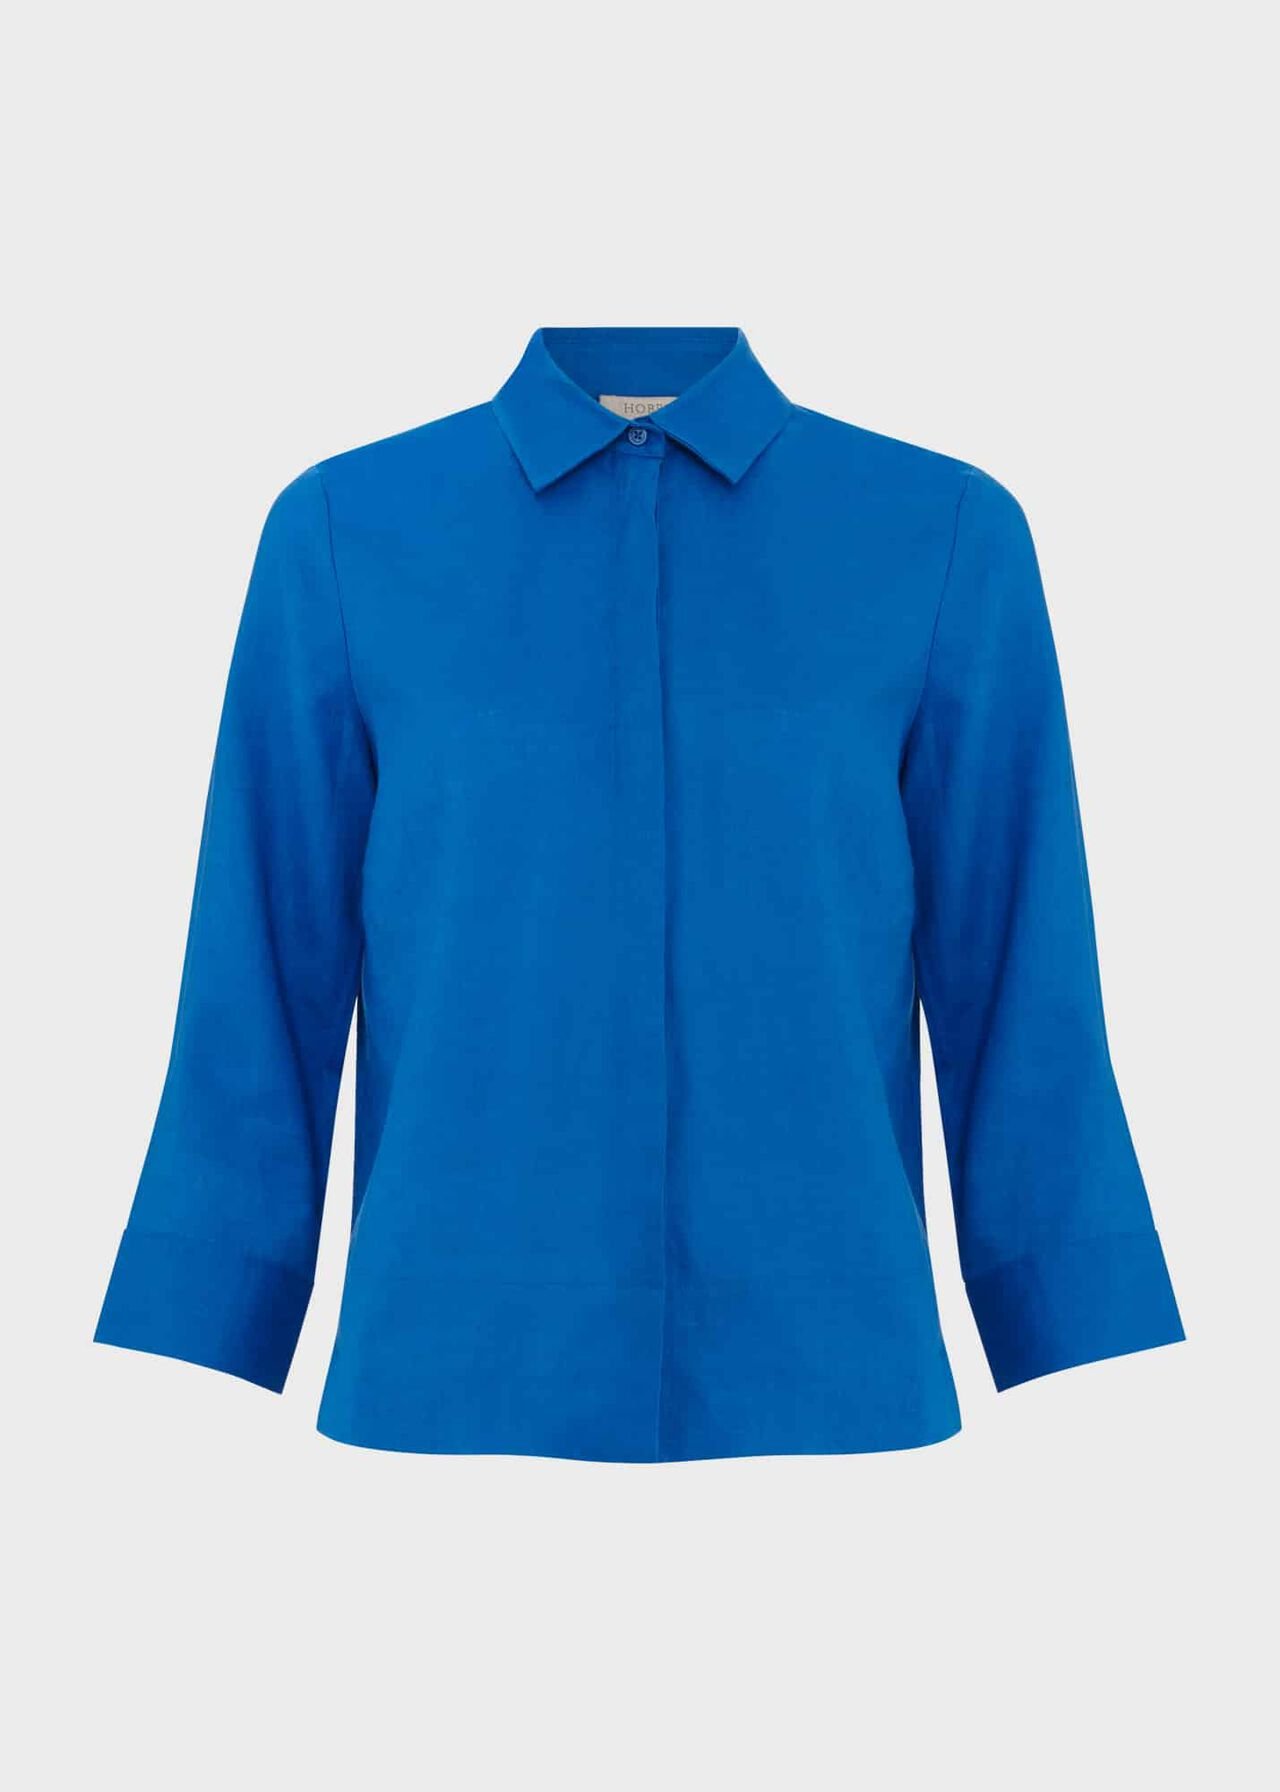 Nita Linen Shirt, Atlantic Blue, hi-res